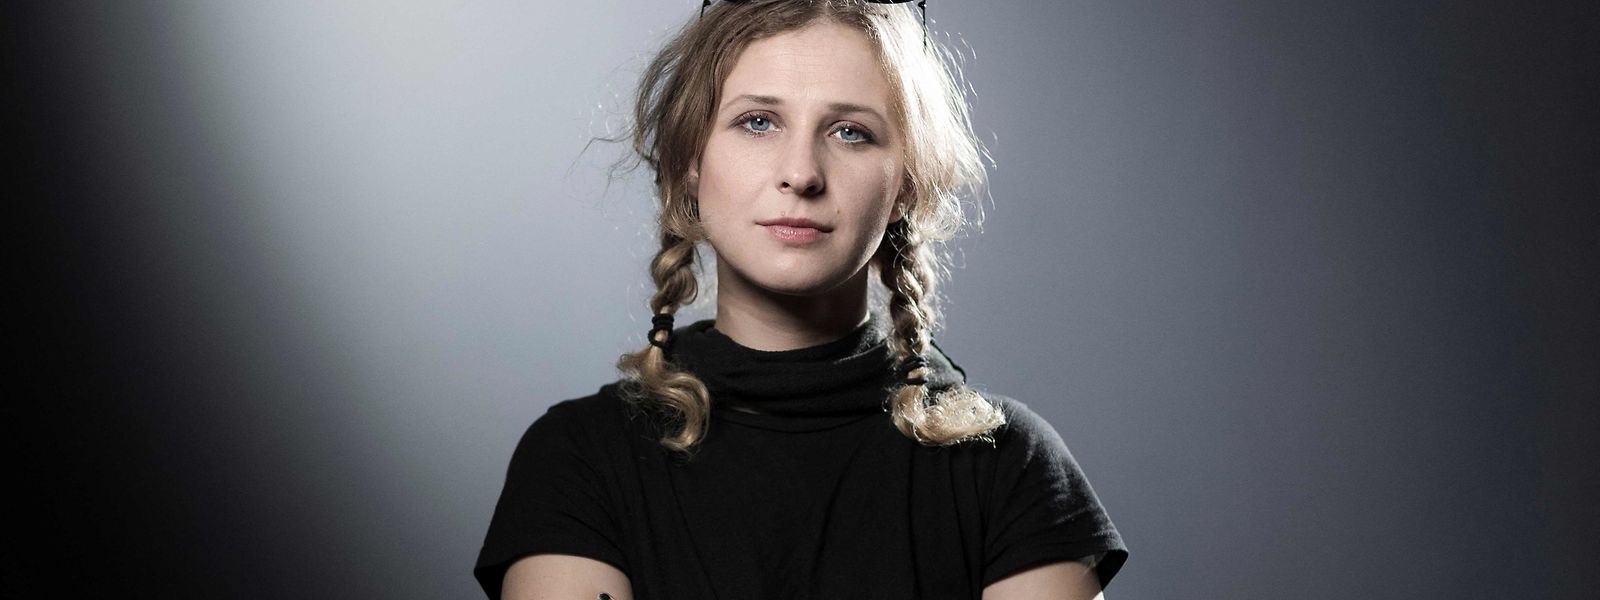 Em setembro passado, Maria Aliokhina foi condenada a um ano de "restrições" à sua liberdade (controlo judicial, recolher obrigatório noturno, proibição de sair de Moscovo) por ter convocado uma manifestação contra a prisão do principal opositor russo, Alexei Navalny.